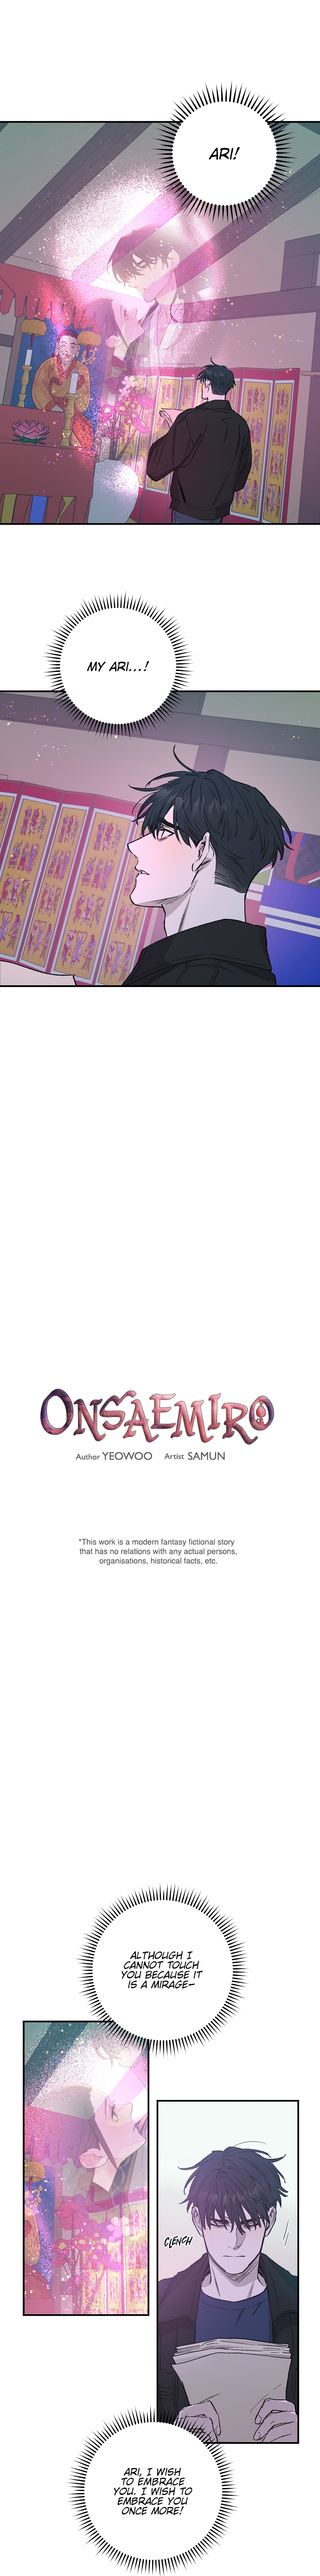 Onsaemiro - Page 1